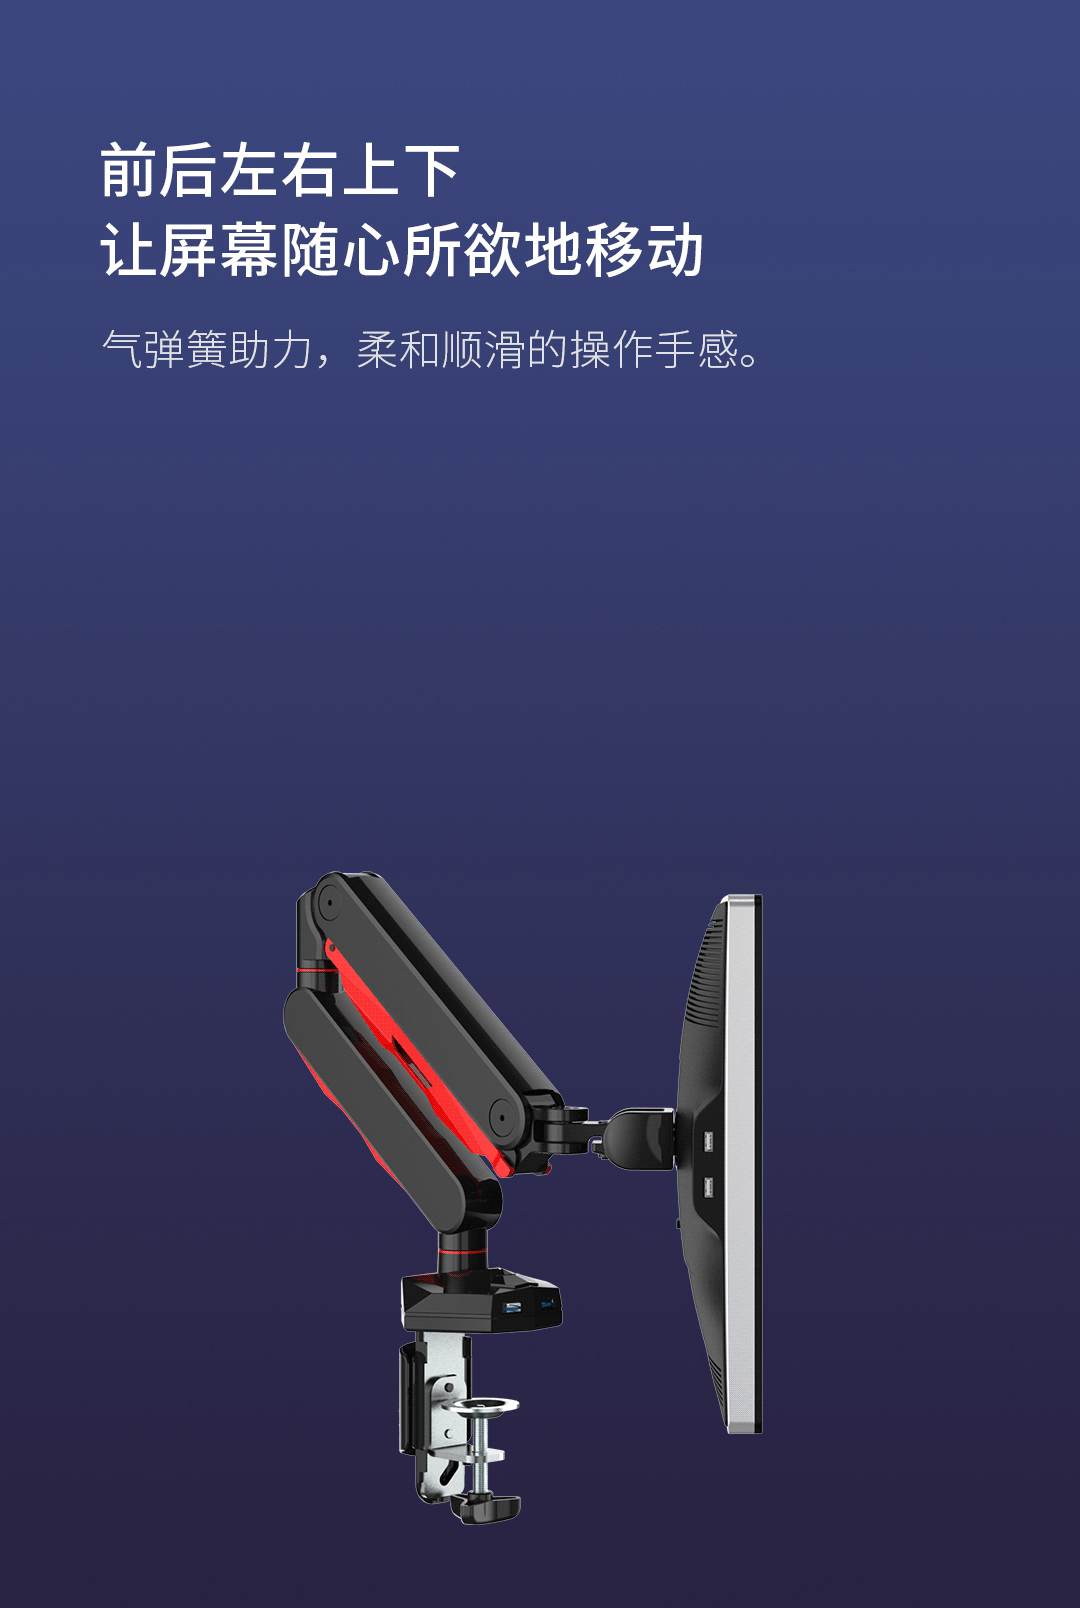 Sforum - Trang thông tin công nghệ mới nhất xiaomi-monitor Xiaomi ra mắt giá đỡ màn hình gaming: Thiết kế gọn nhẹ, có thể xoay 360 độ 